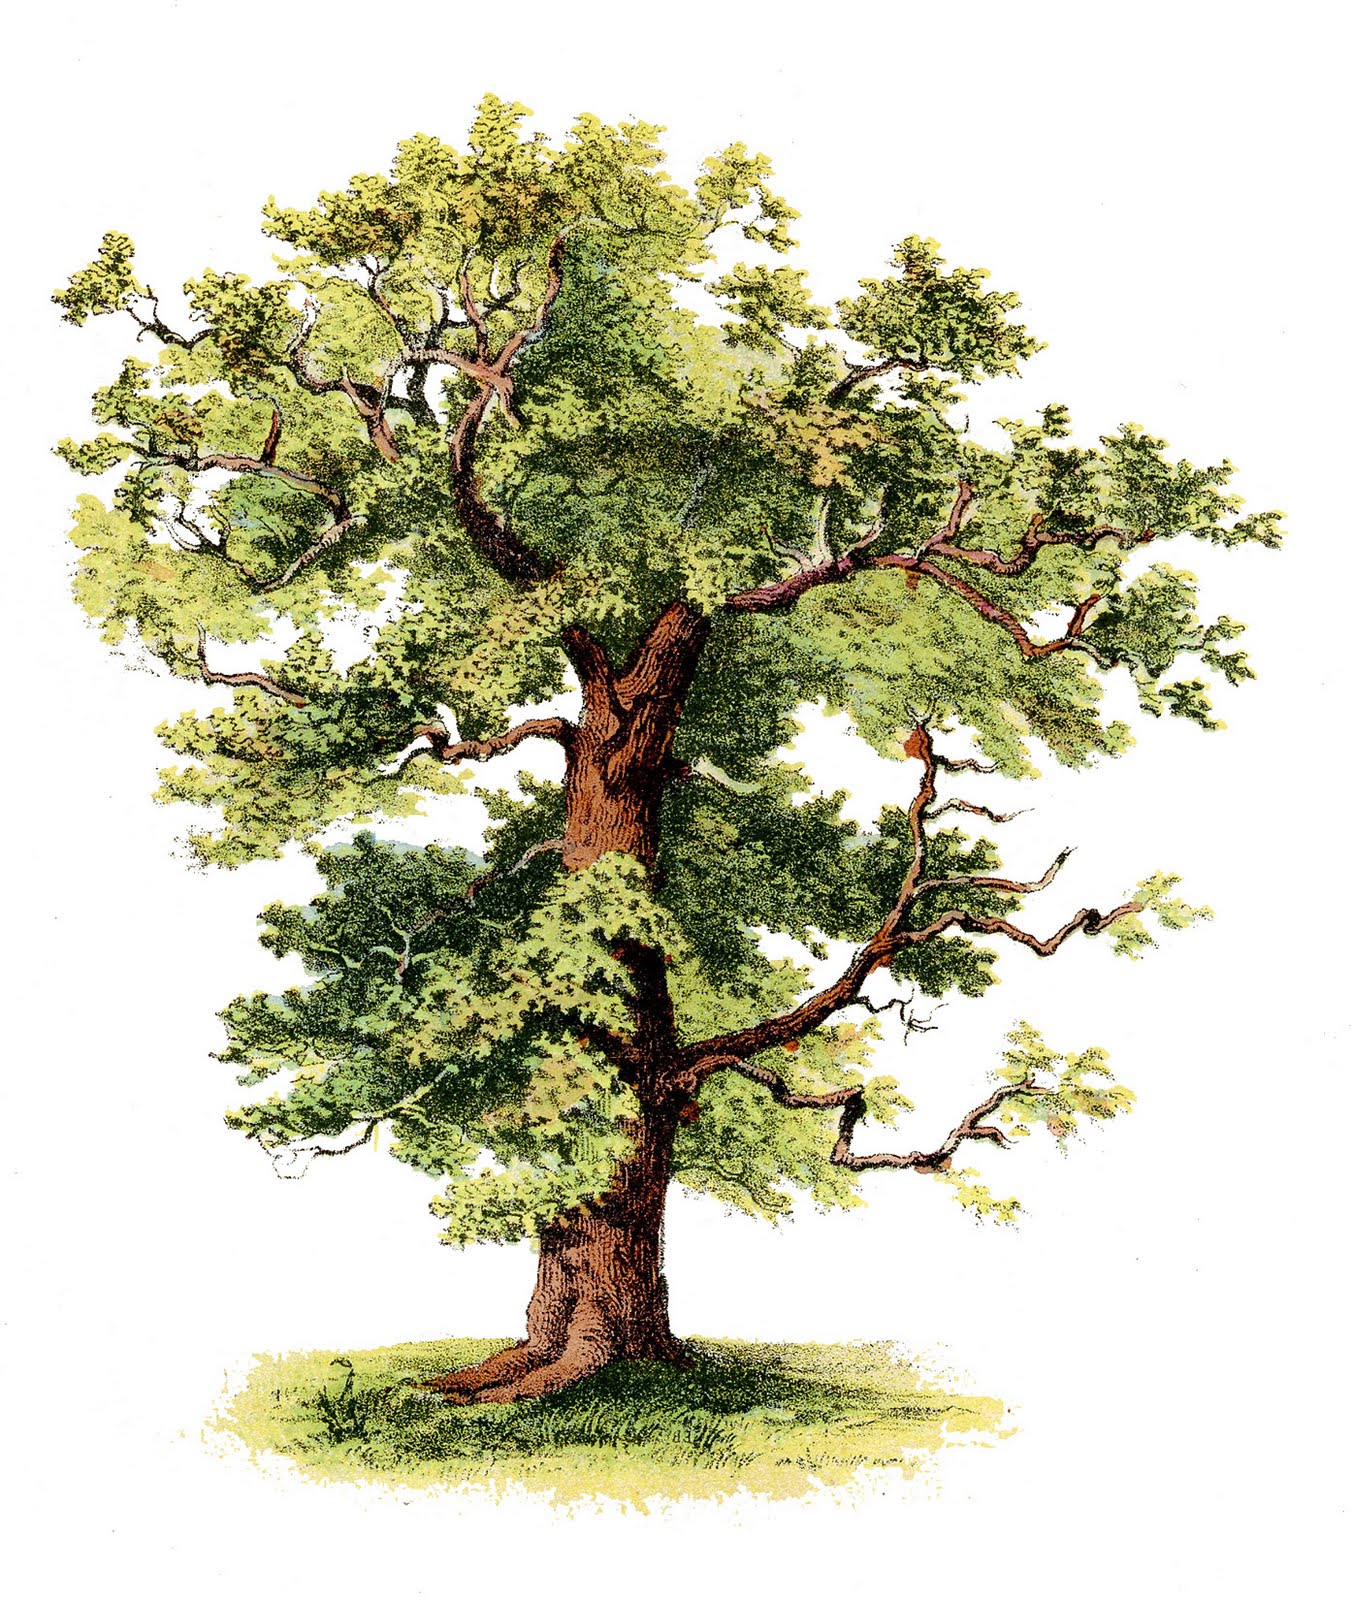 Oak Tree clip art